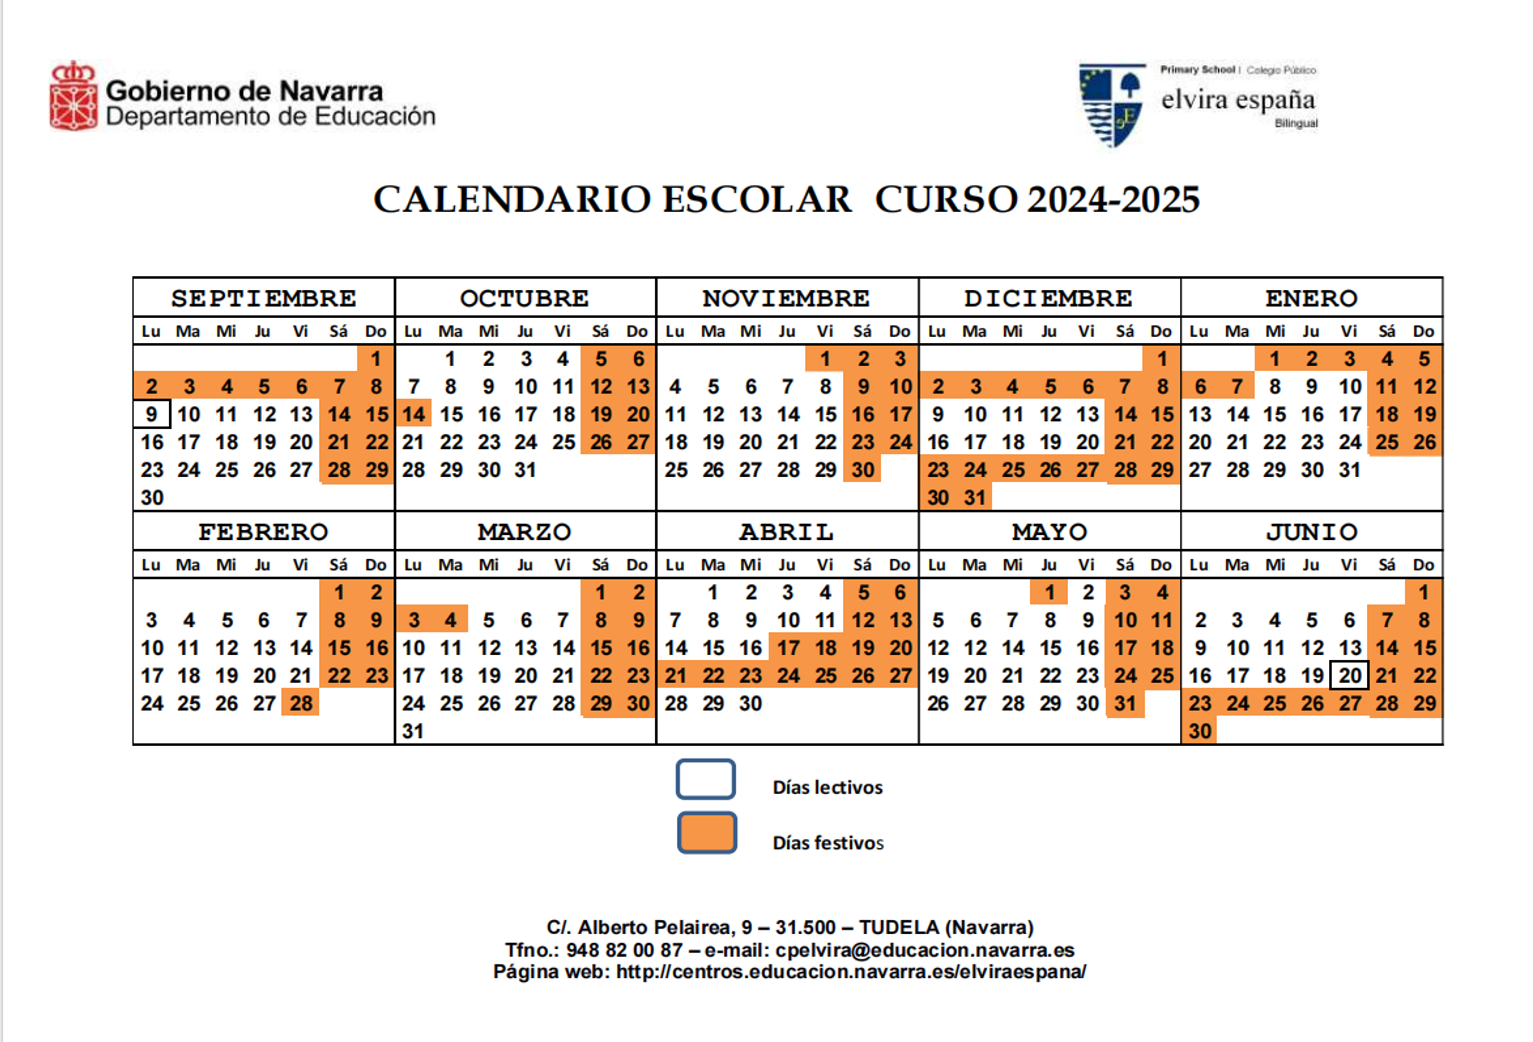 Calendario Escolar curso 24-25 Elvira España